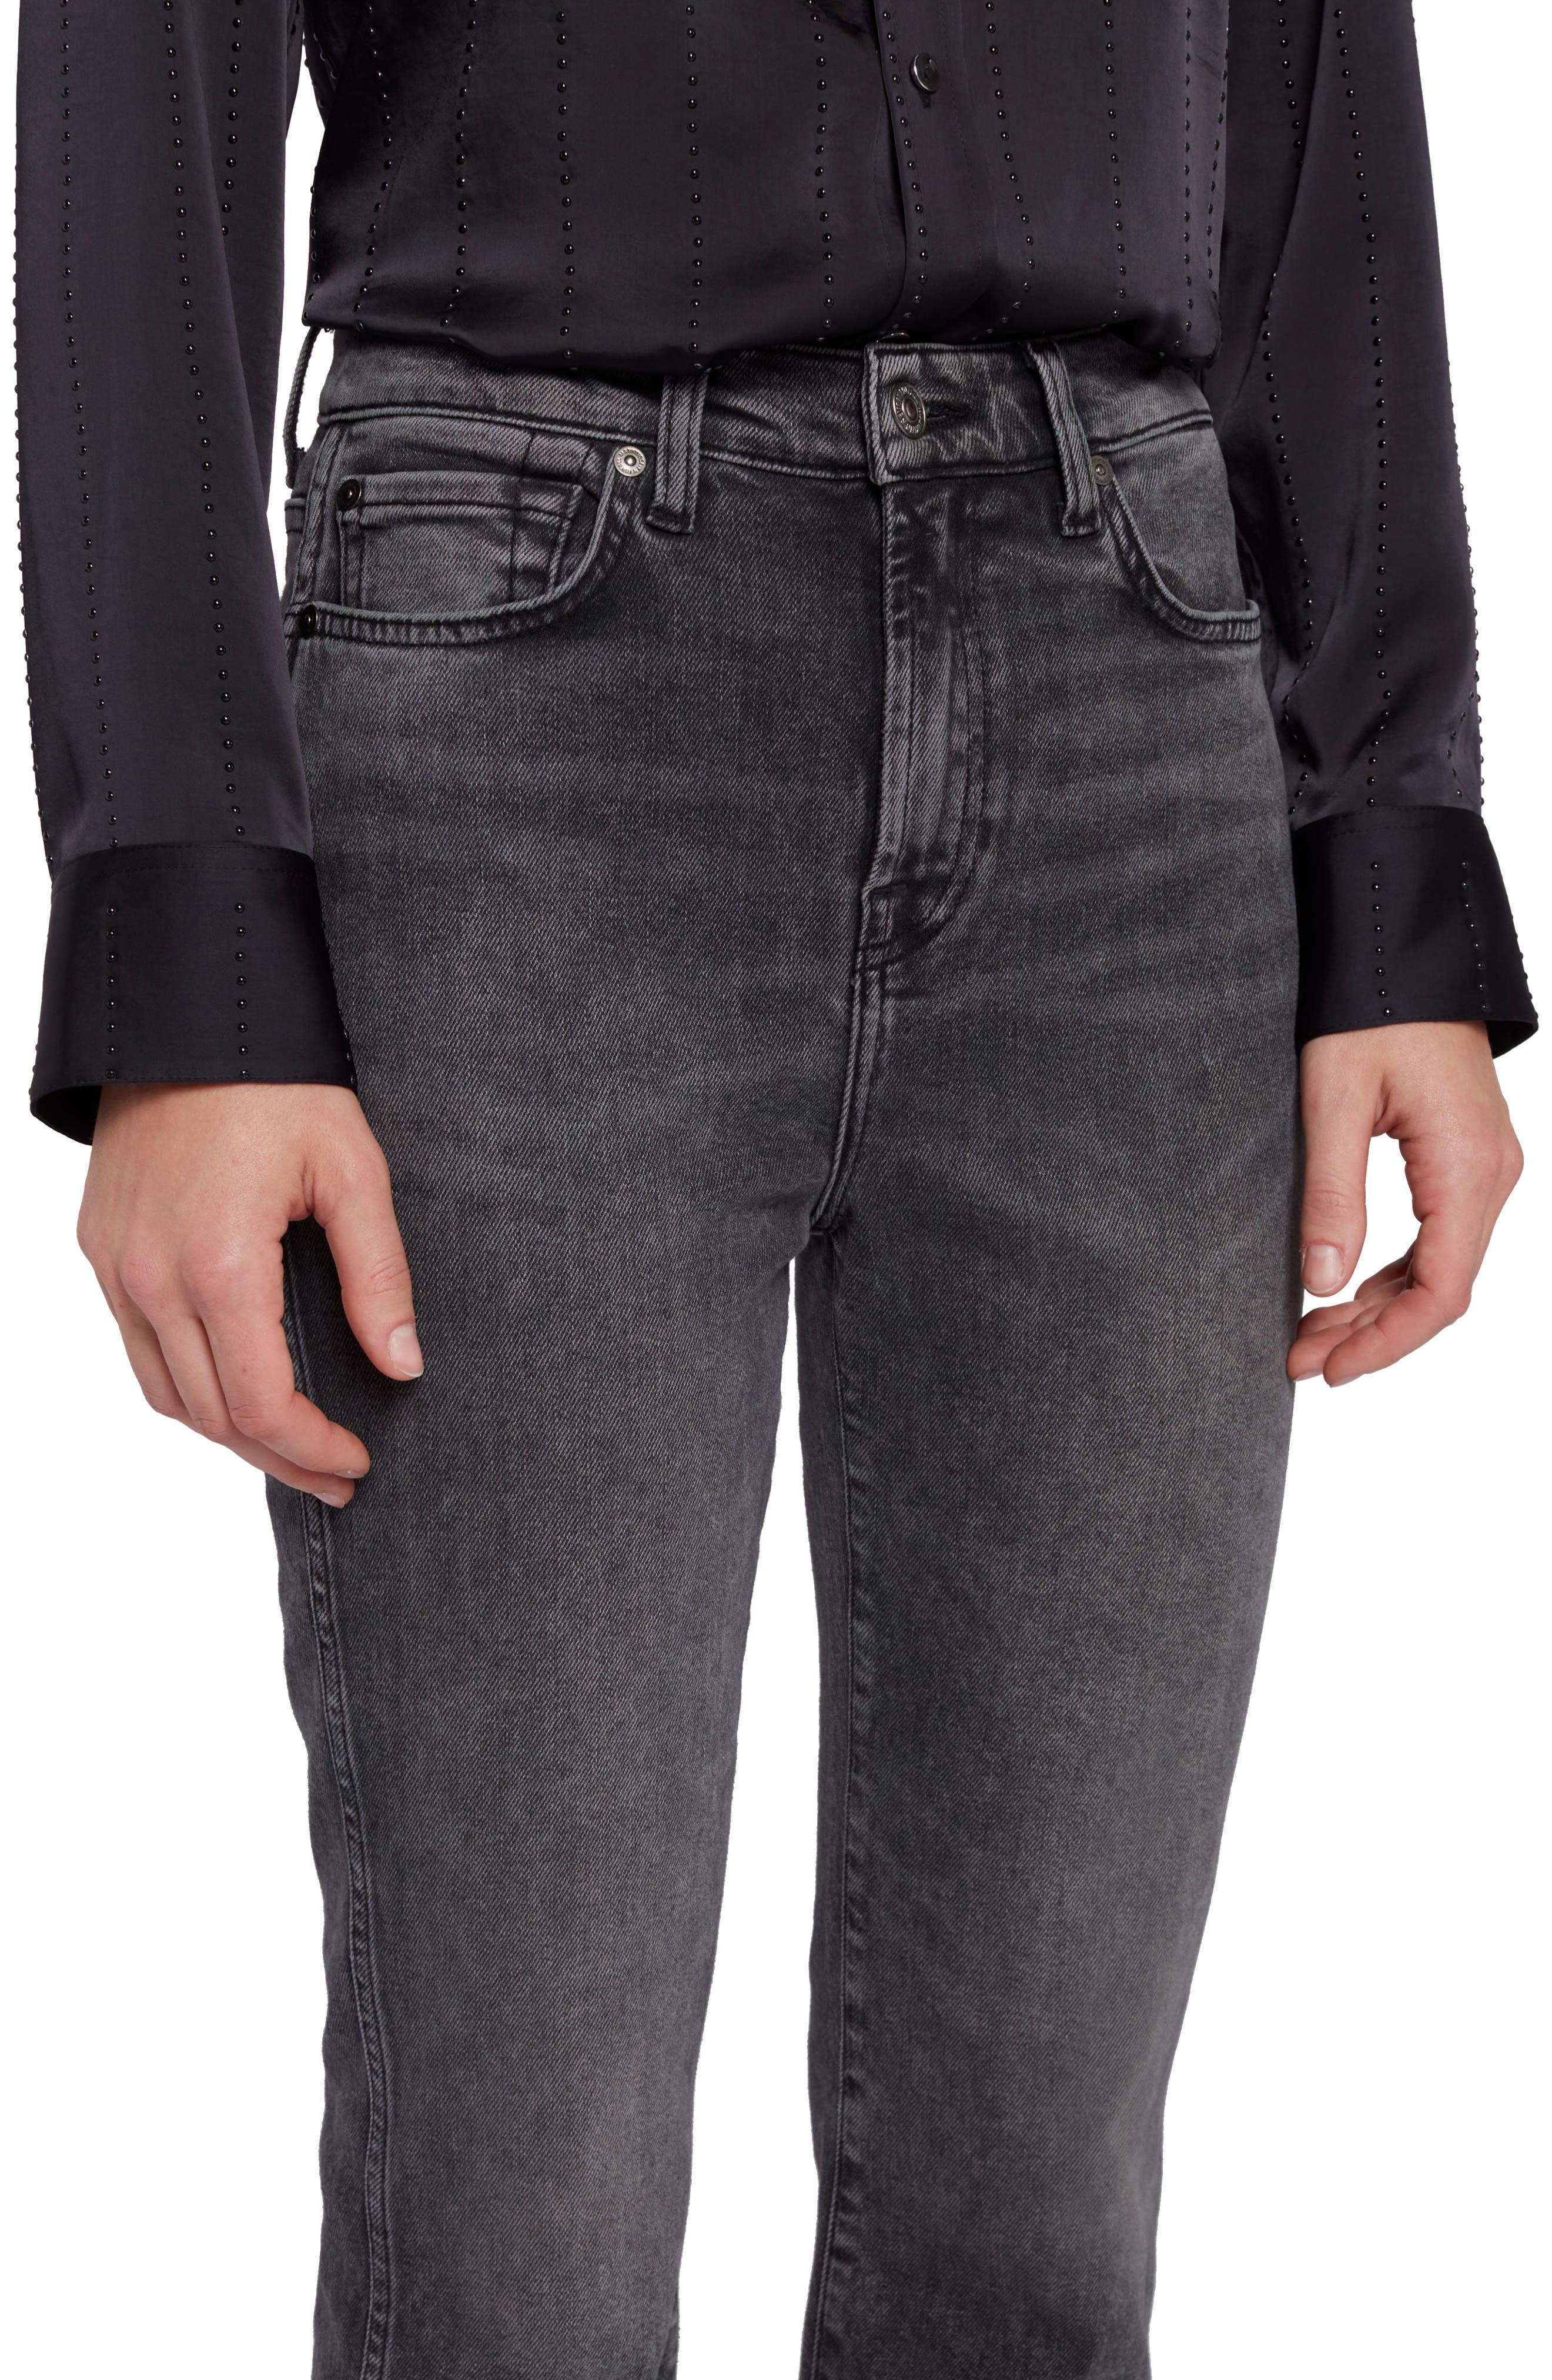 Lotta Linen Capri - Flared Jeans